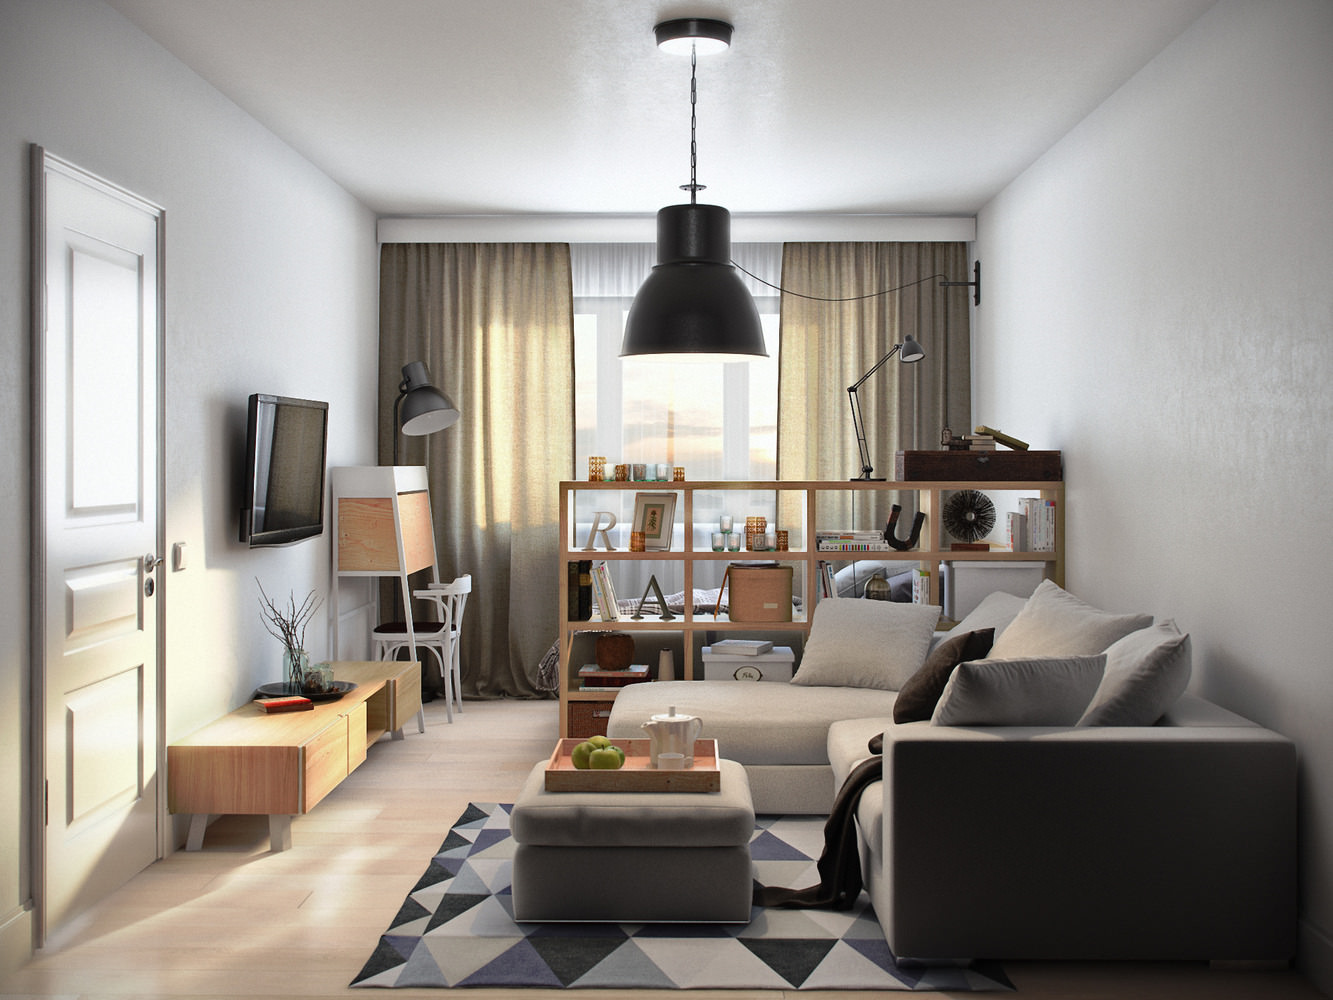 Однокомнатная квартира: как правильно расставить мебель, чтобы было просторно